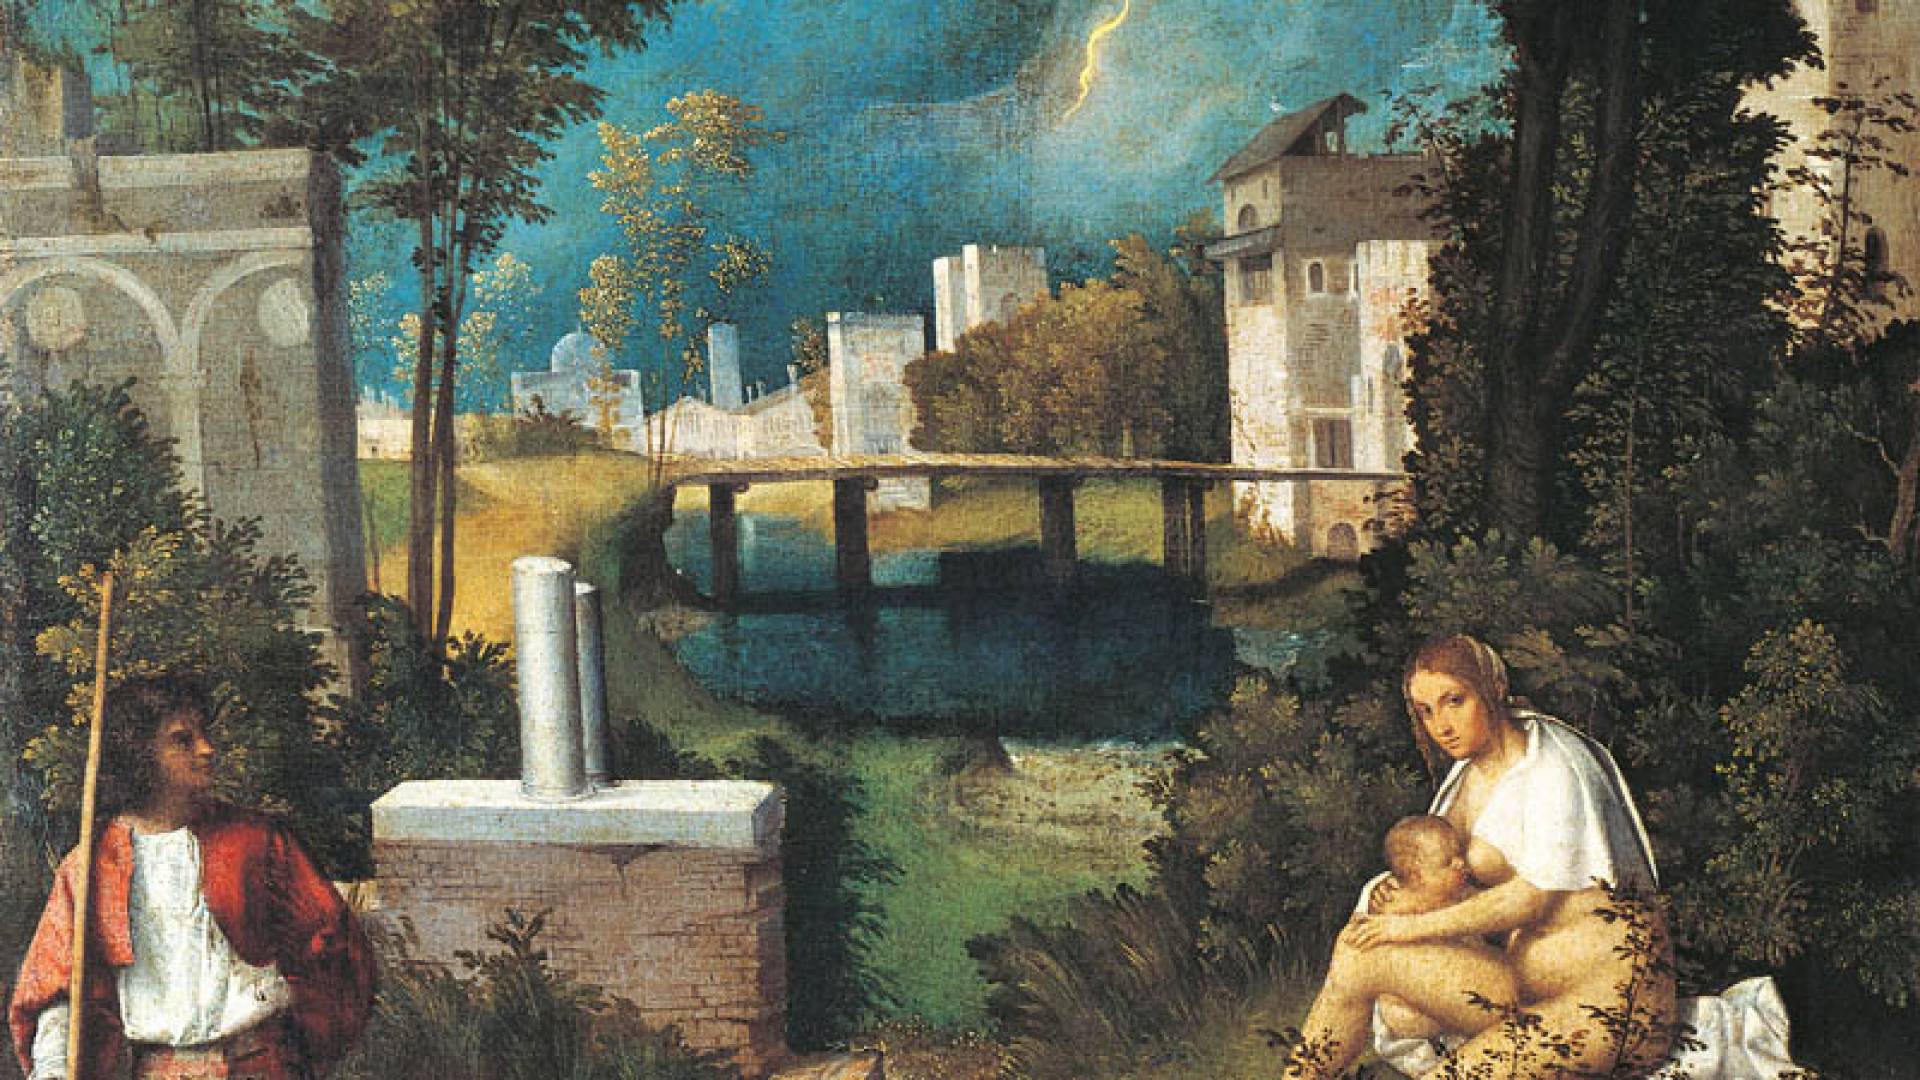 GALLERIE DELL'ACCADEMIA, La Tempesta - Giorgione